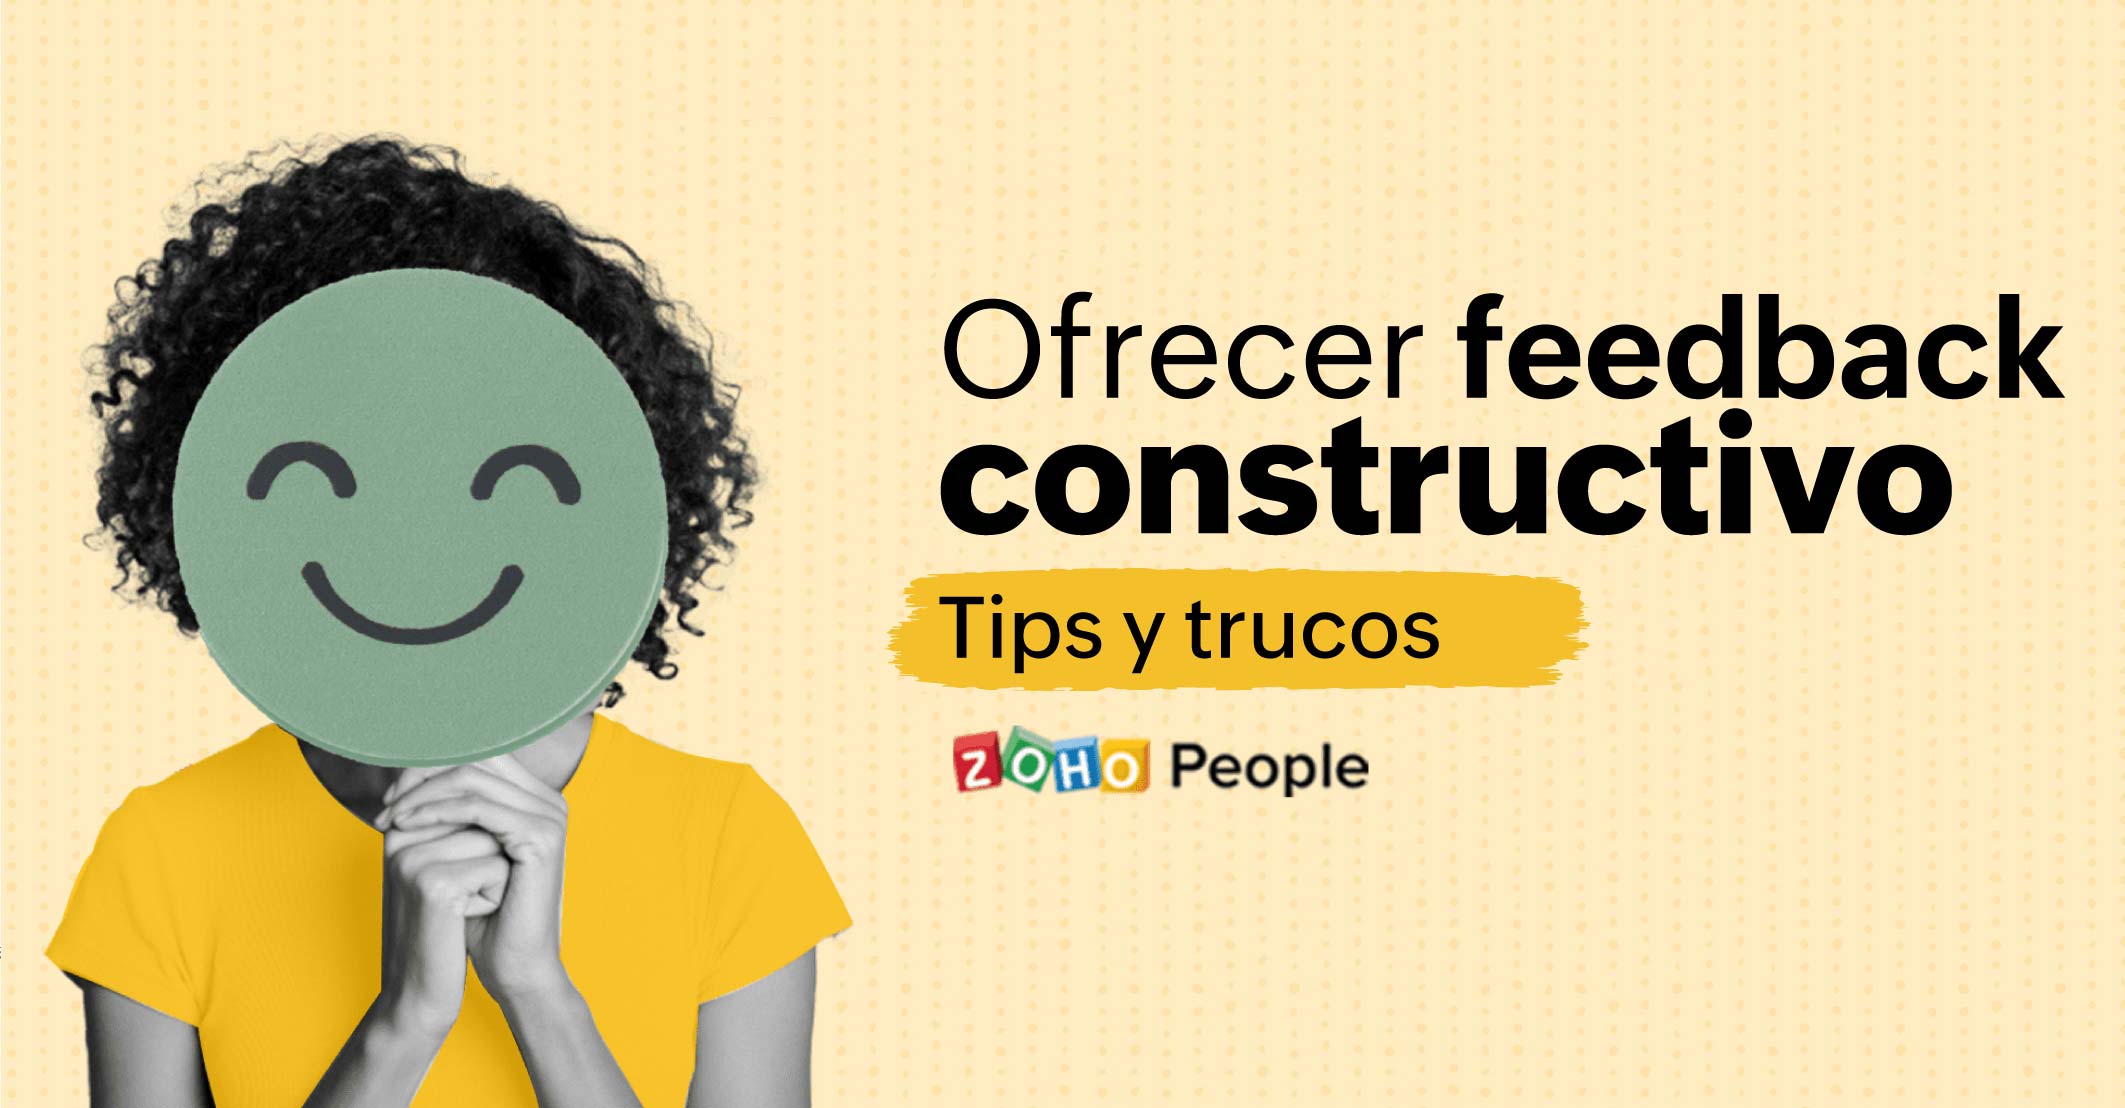 Ofrecer feedback constructivo. Tips y trucos